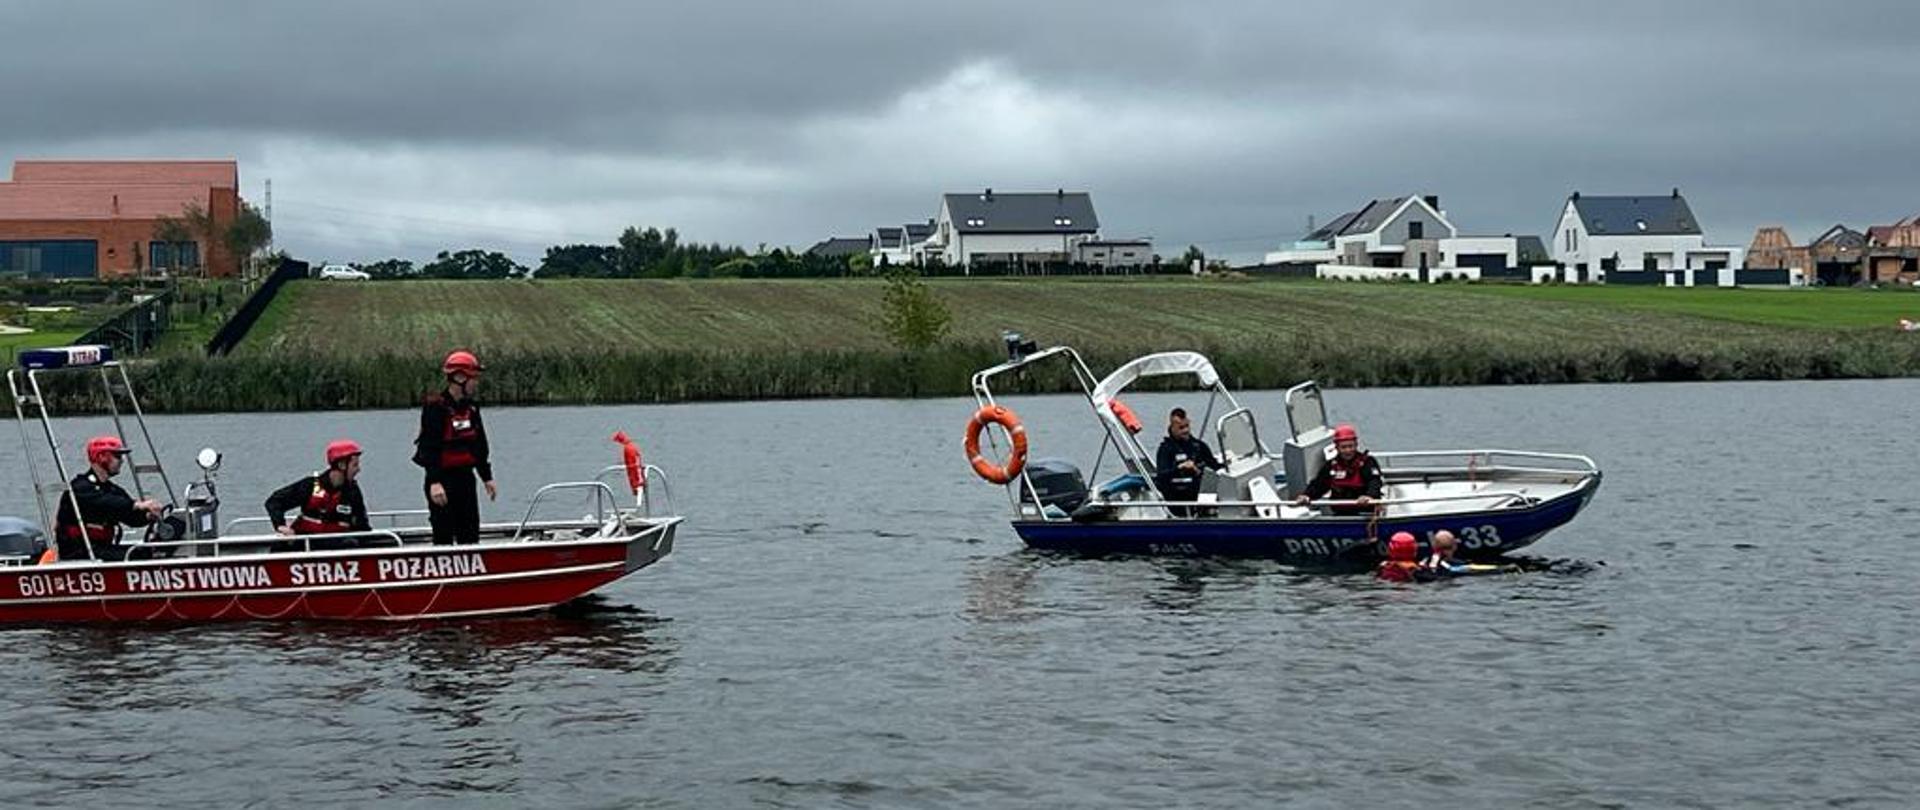 Na zdjęciu łódź strażacka oraz policyjna, w wodzie ratownik zabezpieczający osobę poszkodowaną